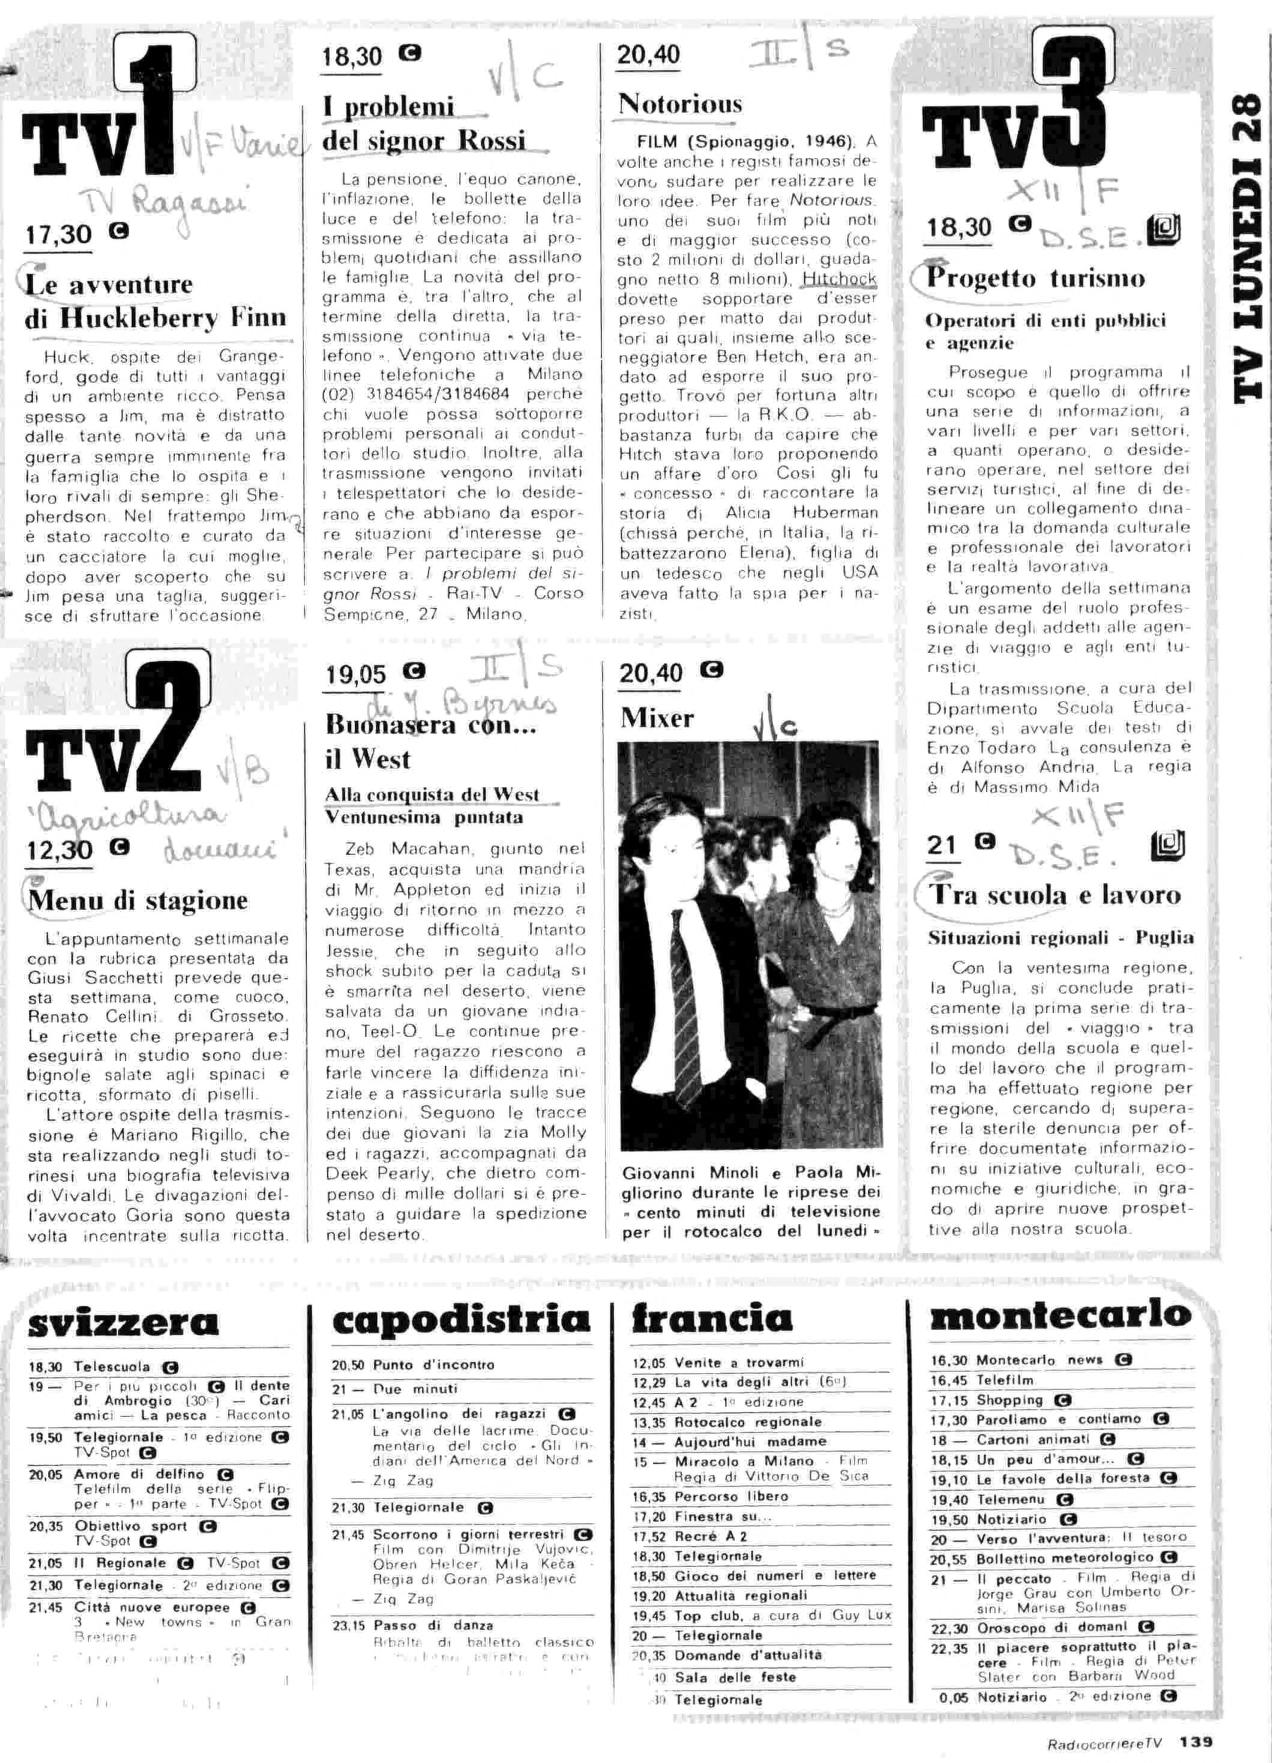 RC-1980-18_0138.jp2&id=Radiocorriere-198